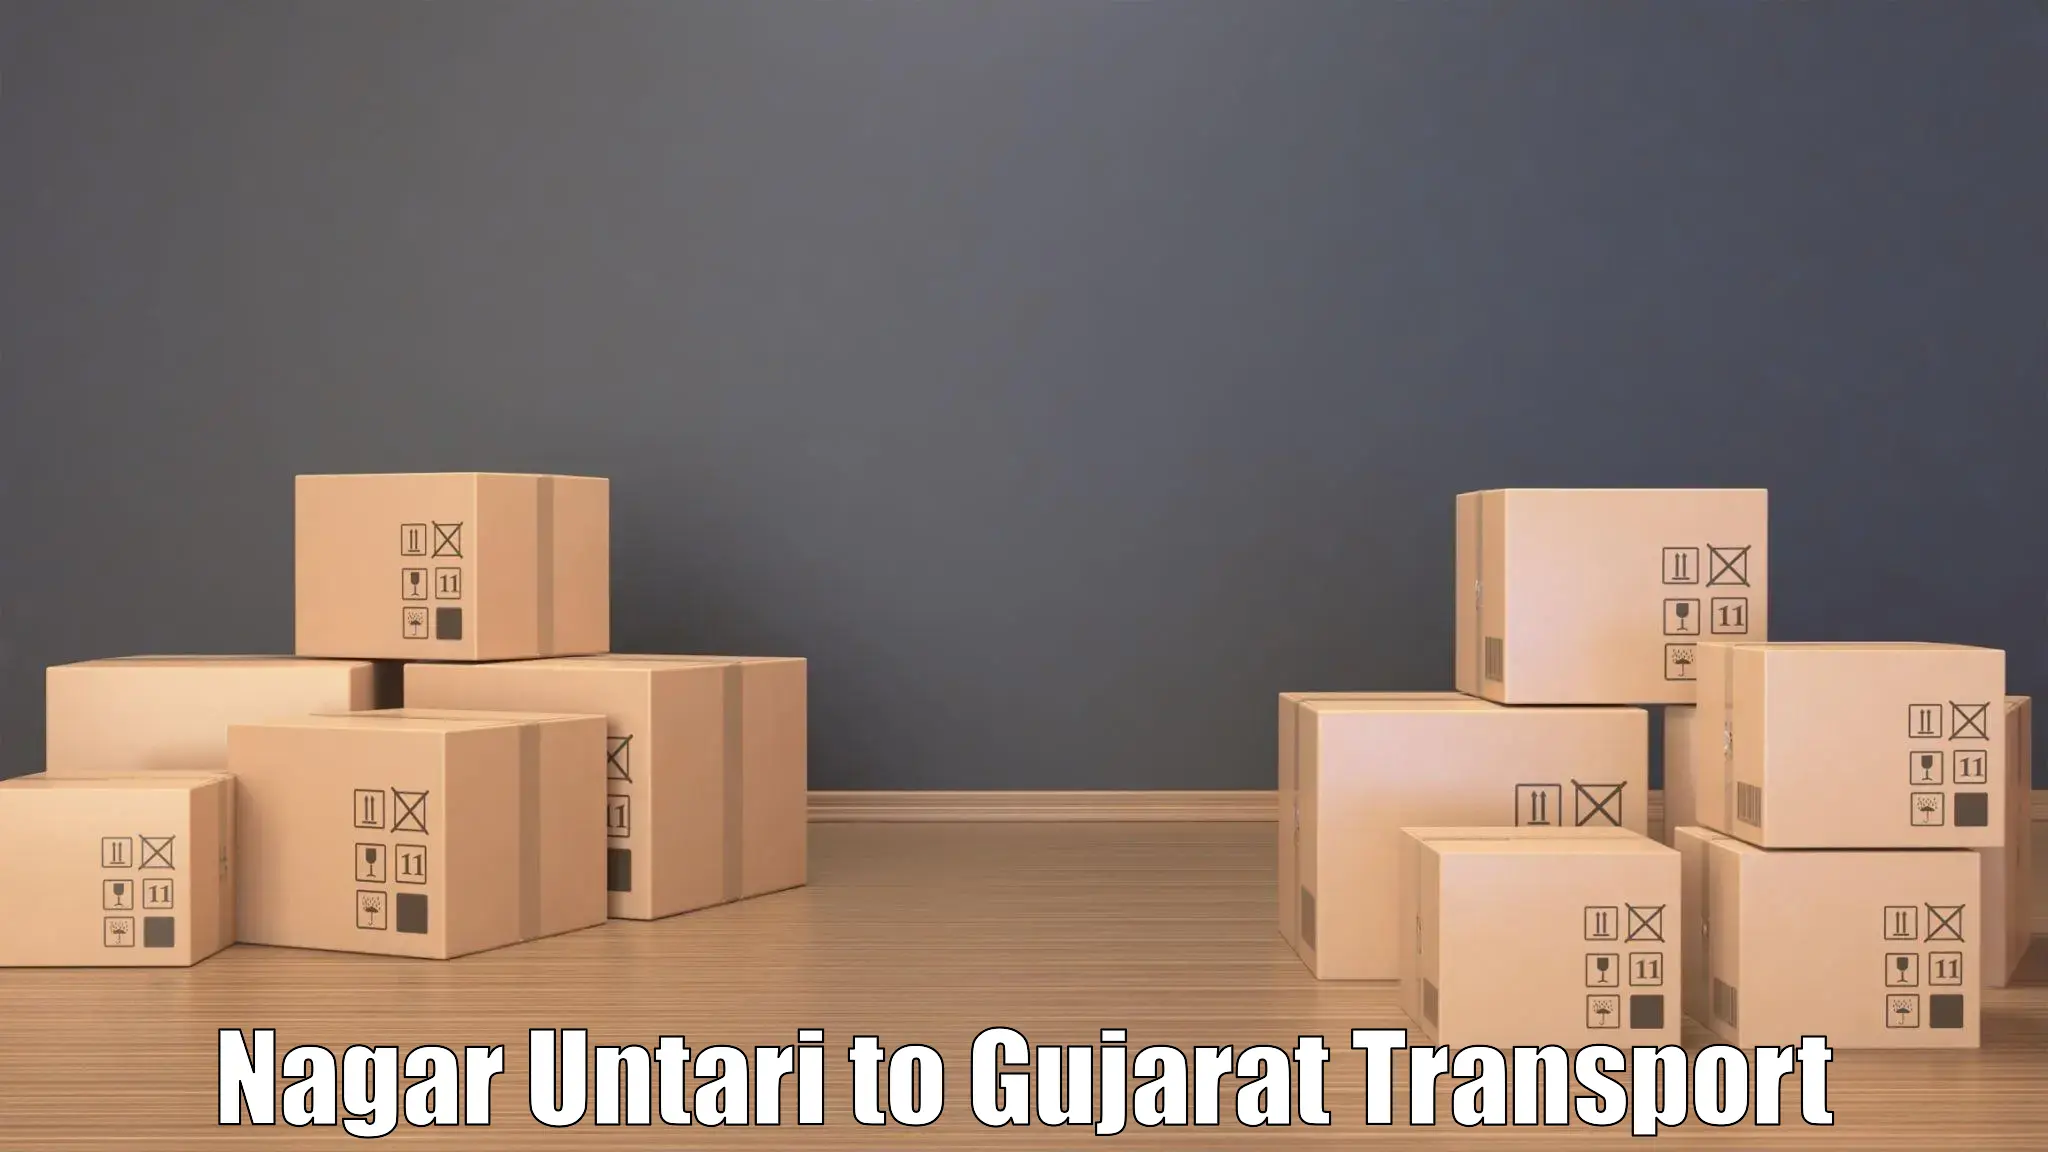 Package delivery services Nagar Untari to Patan Gujarat